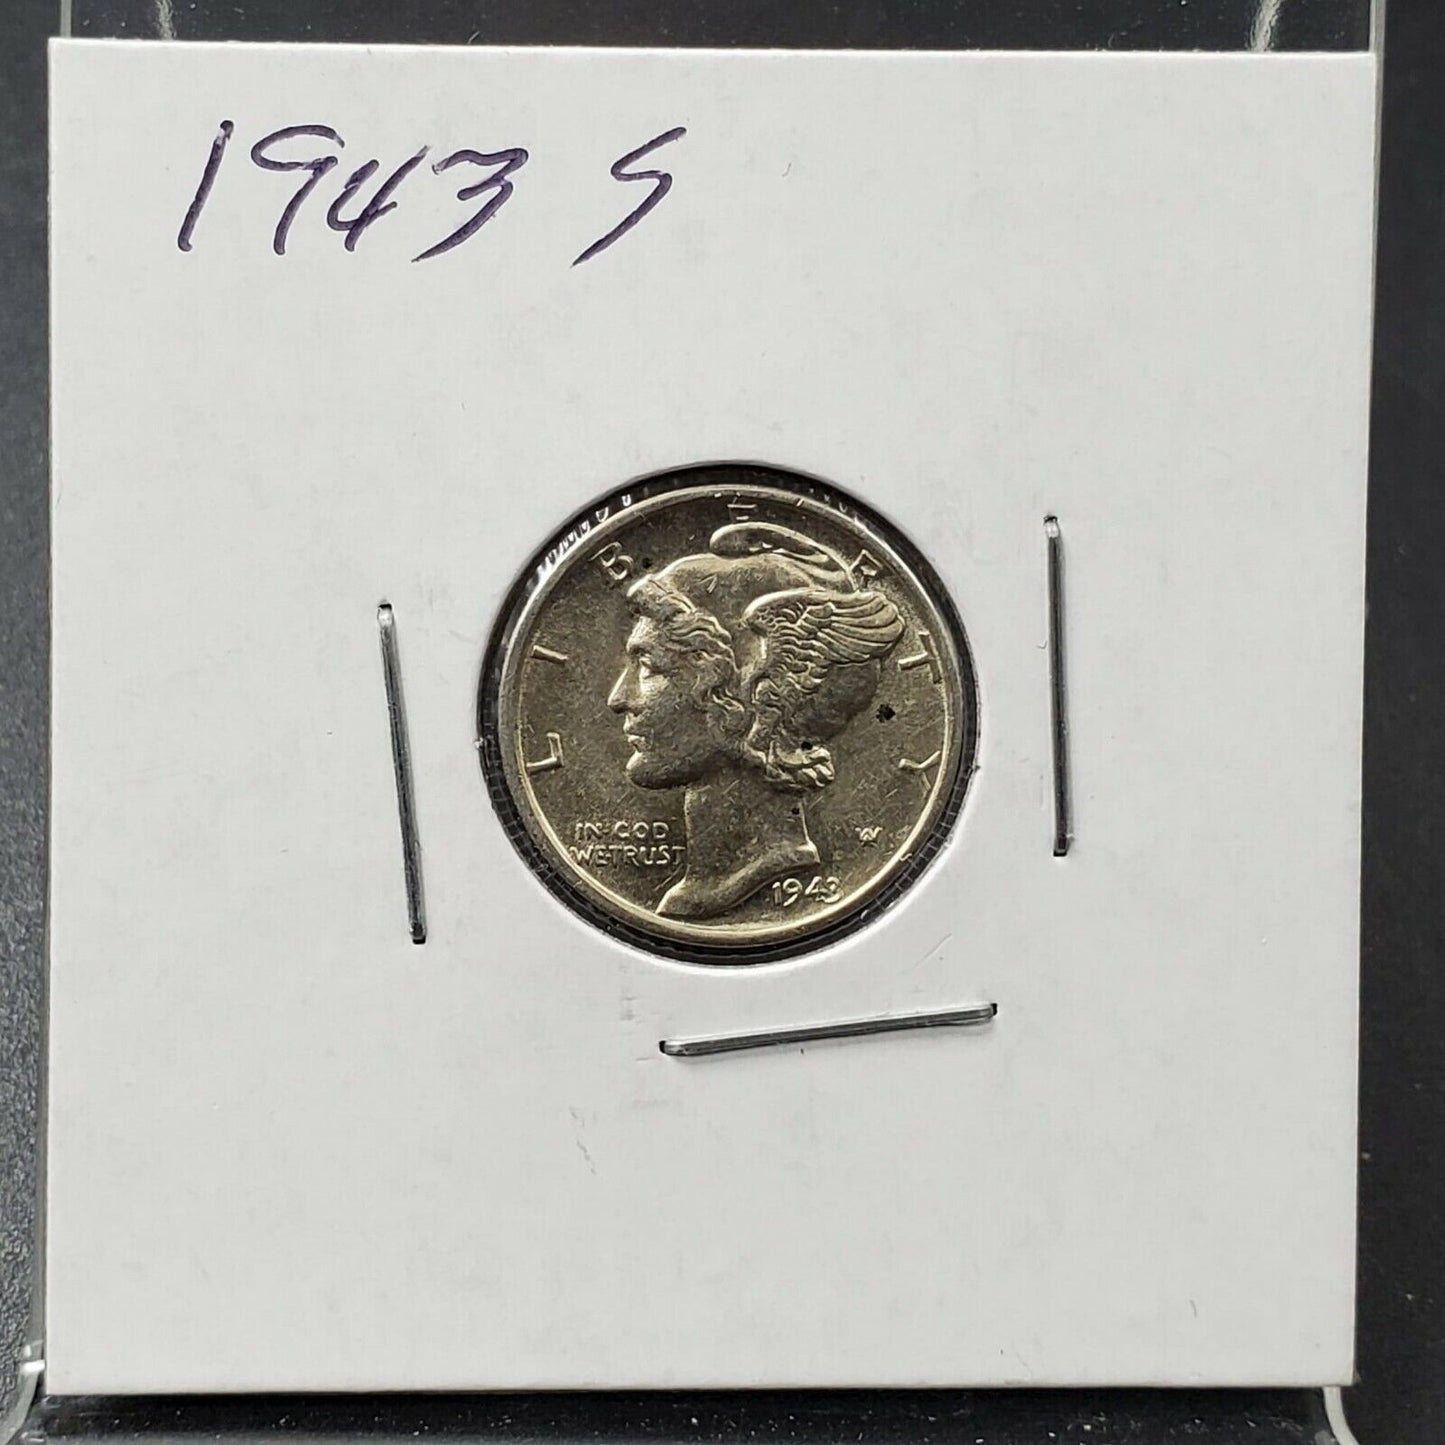 1943 P D S WW2 Mercury Silver Dime 3 Coin AU About UNC Set World War Two Coins